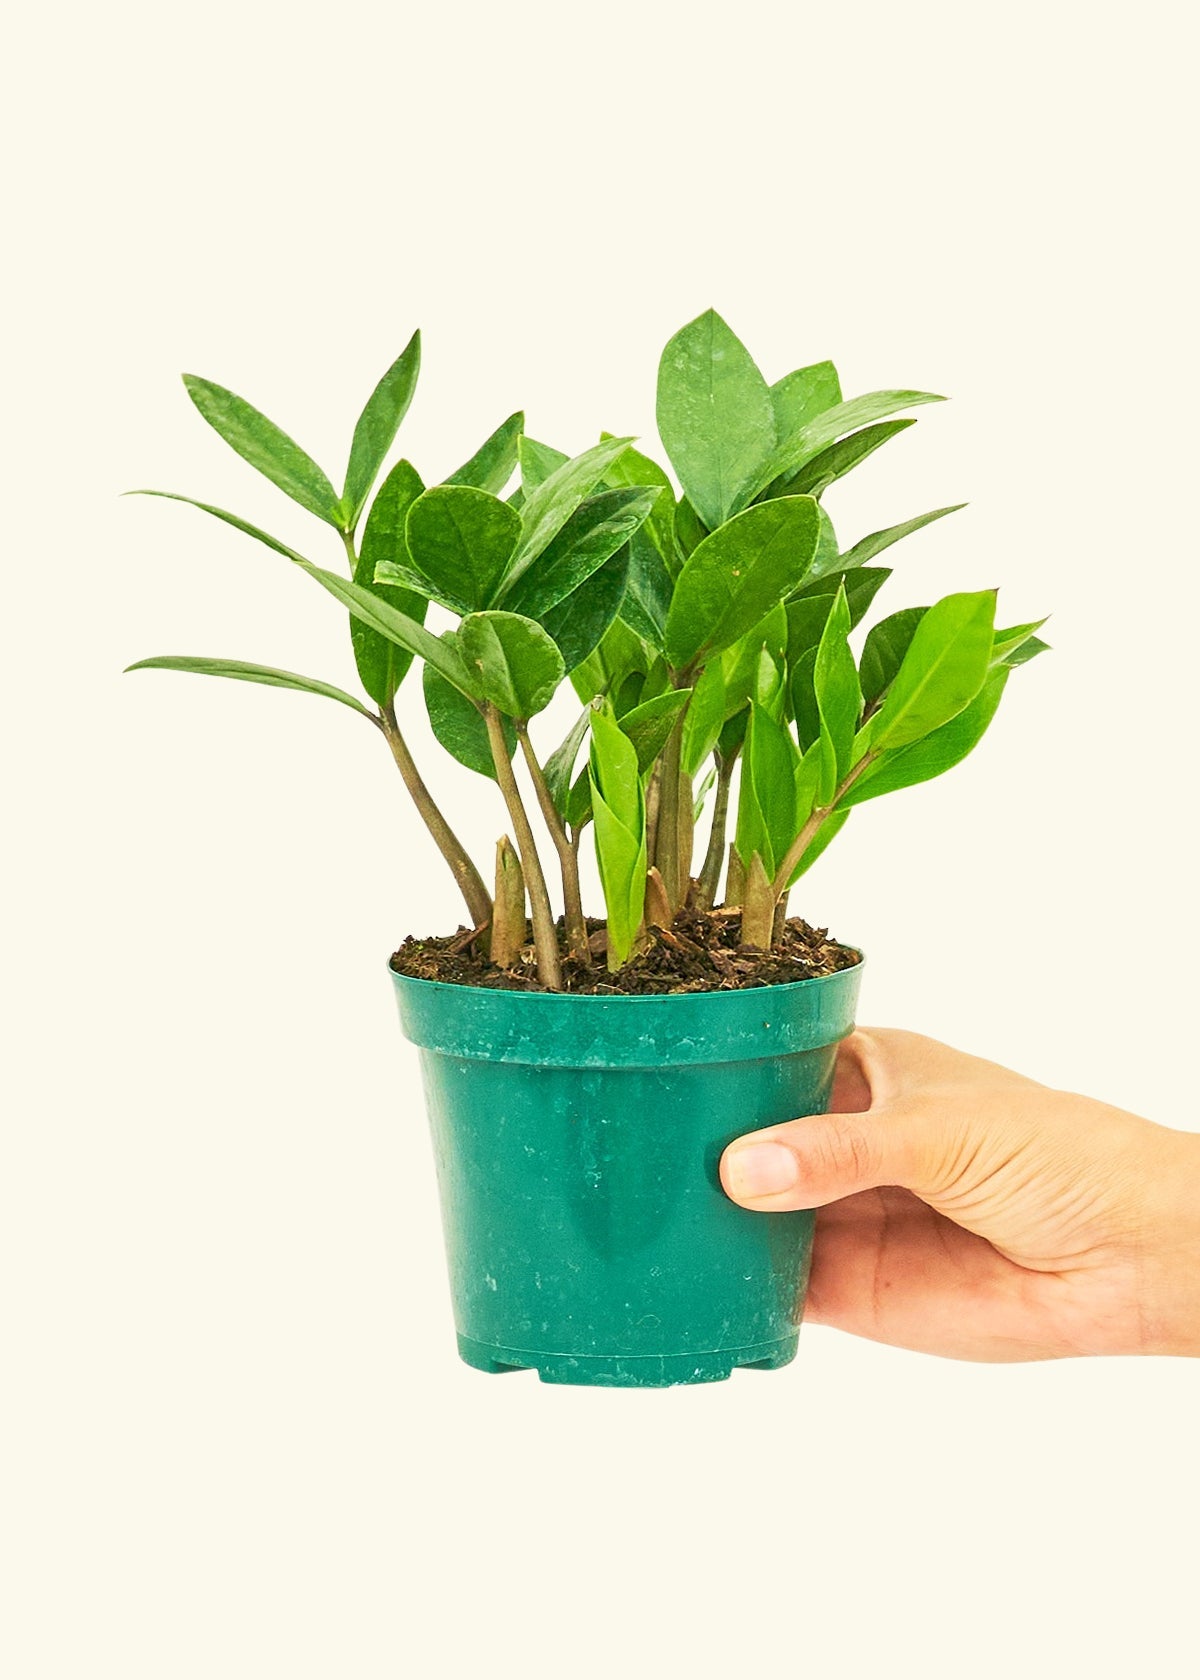 Small ZZ Plant (Zamioculcas zamiifolia) in a grow pot.